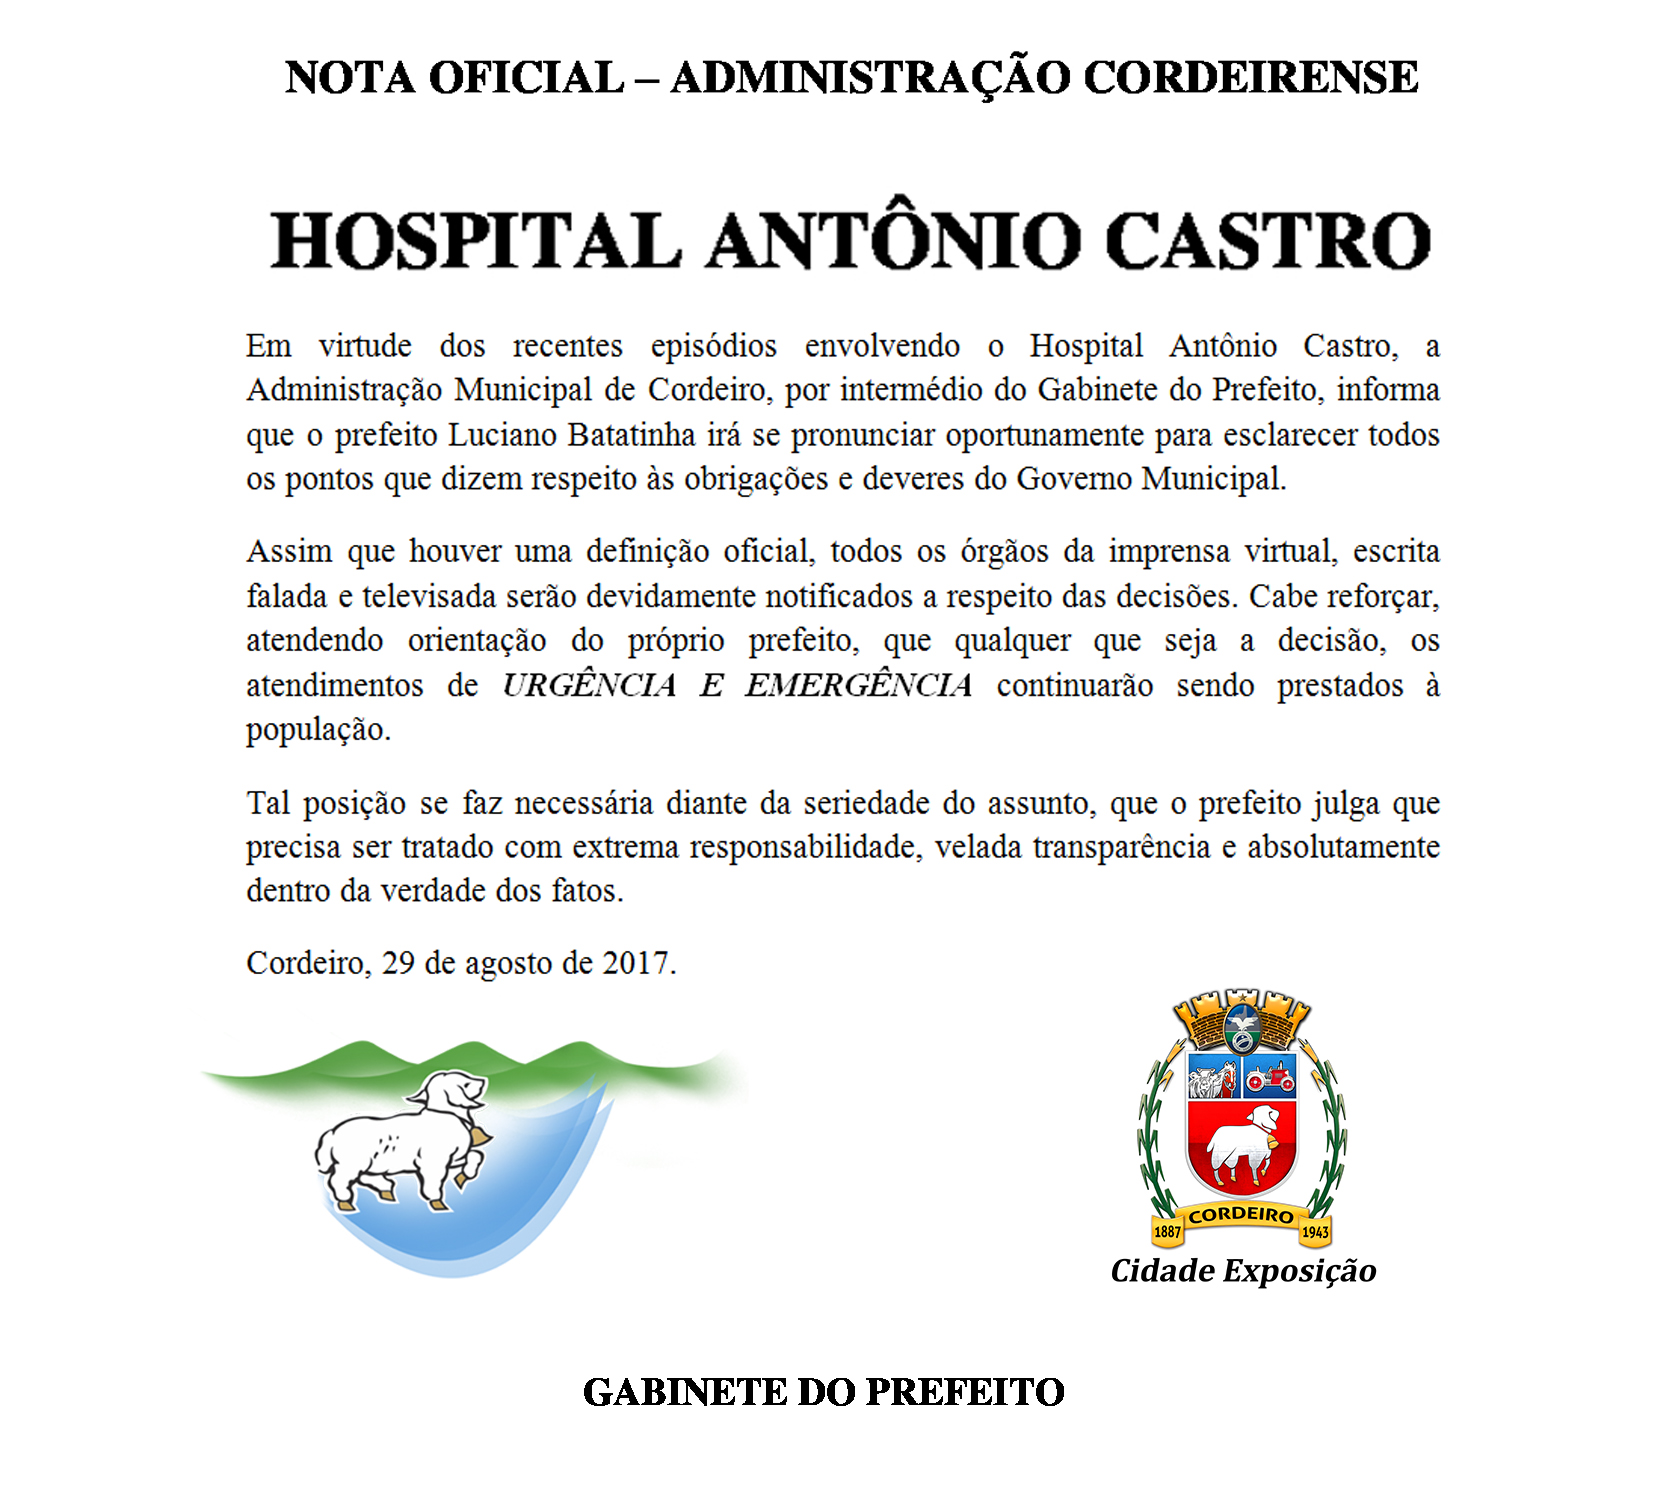 Você está visualizando atualmente NOTA OFICIAL PRELIMINAR da Administração Municipal de Cordeiro a respeito dos acontecimentos envolvendo o Hospital Antônio Castro.